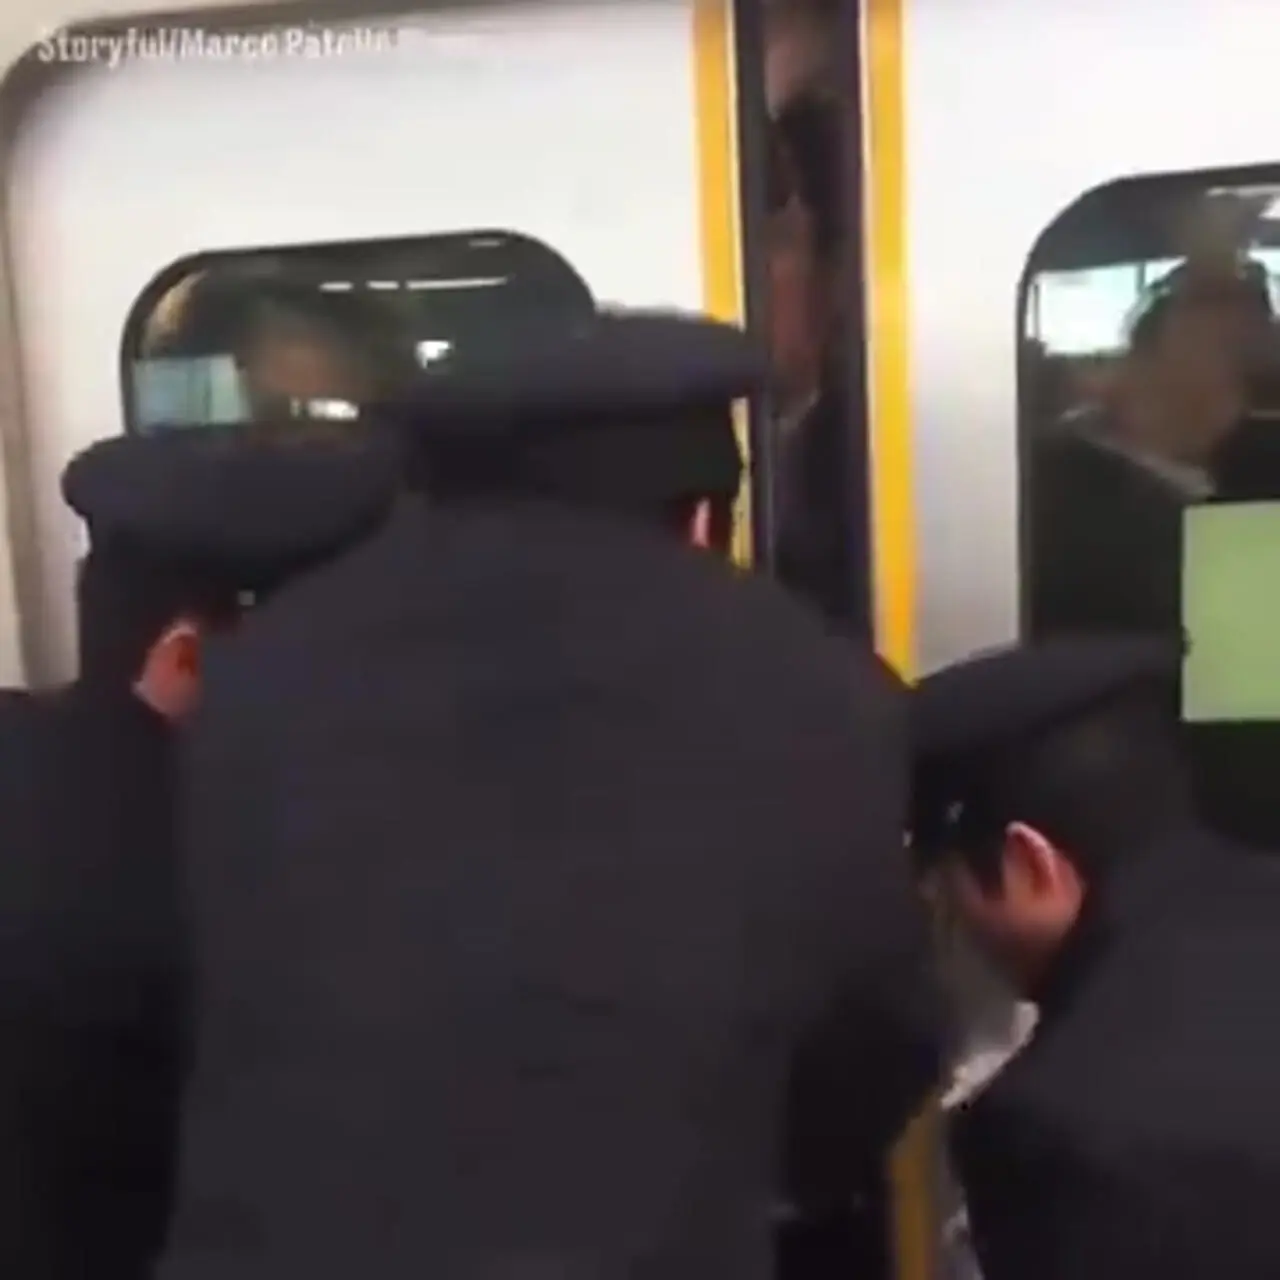 ویدئویی پر بازدید از وضعیت عجیب متروی ژاپن